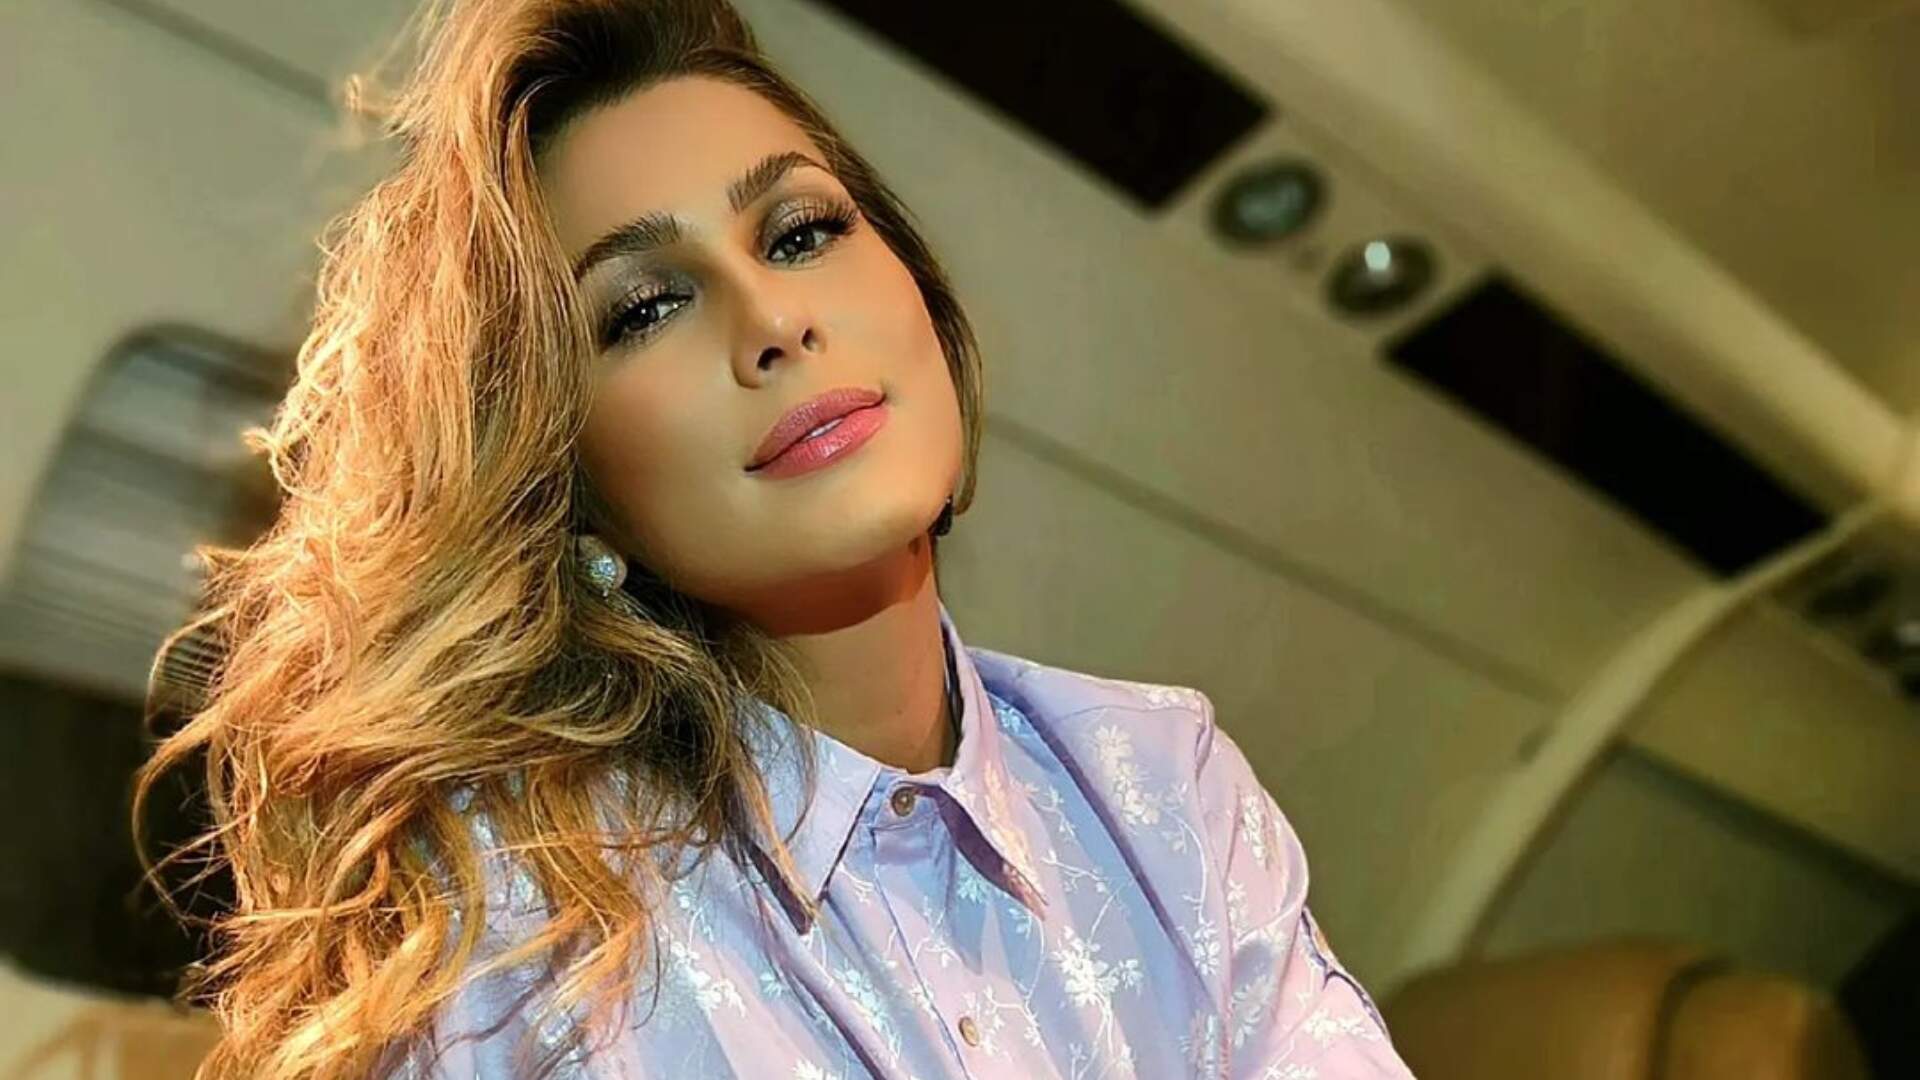 Lívia Andrade se exibe de vestido curtinho com zoom no máximo: “No detalhe pra vocês” - Metropolitana FM